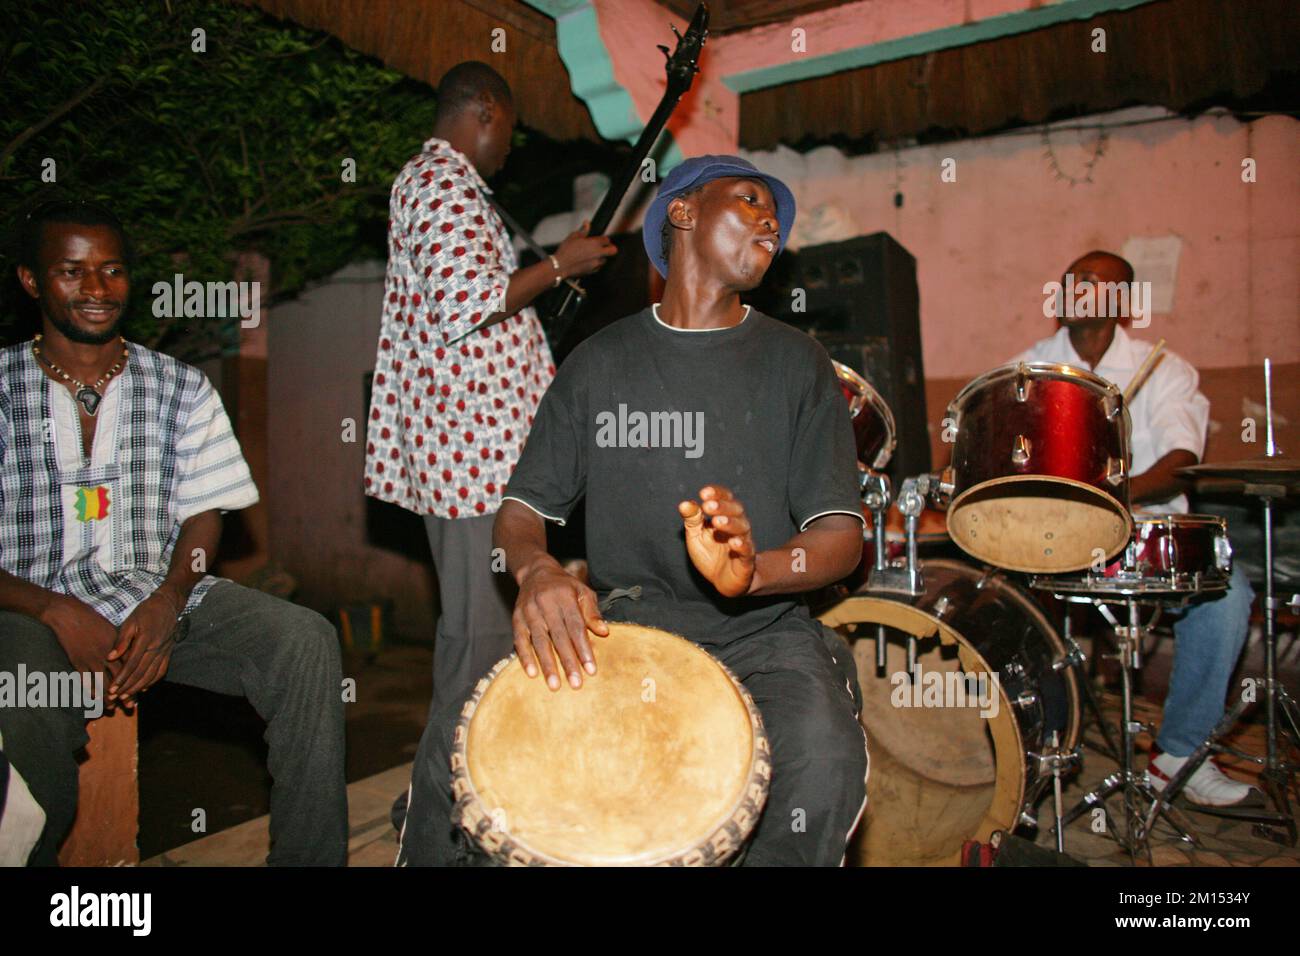 Malis Hauptstadt hat eine reiche Musikszene mit Clubs und Nachtleben . In Bamako gibt es einige tolle Clubs mit Live-Musik in Bamako, Mali, Afrika. Stockfoto